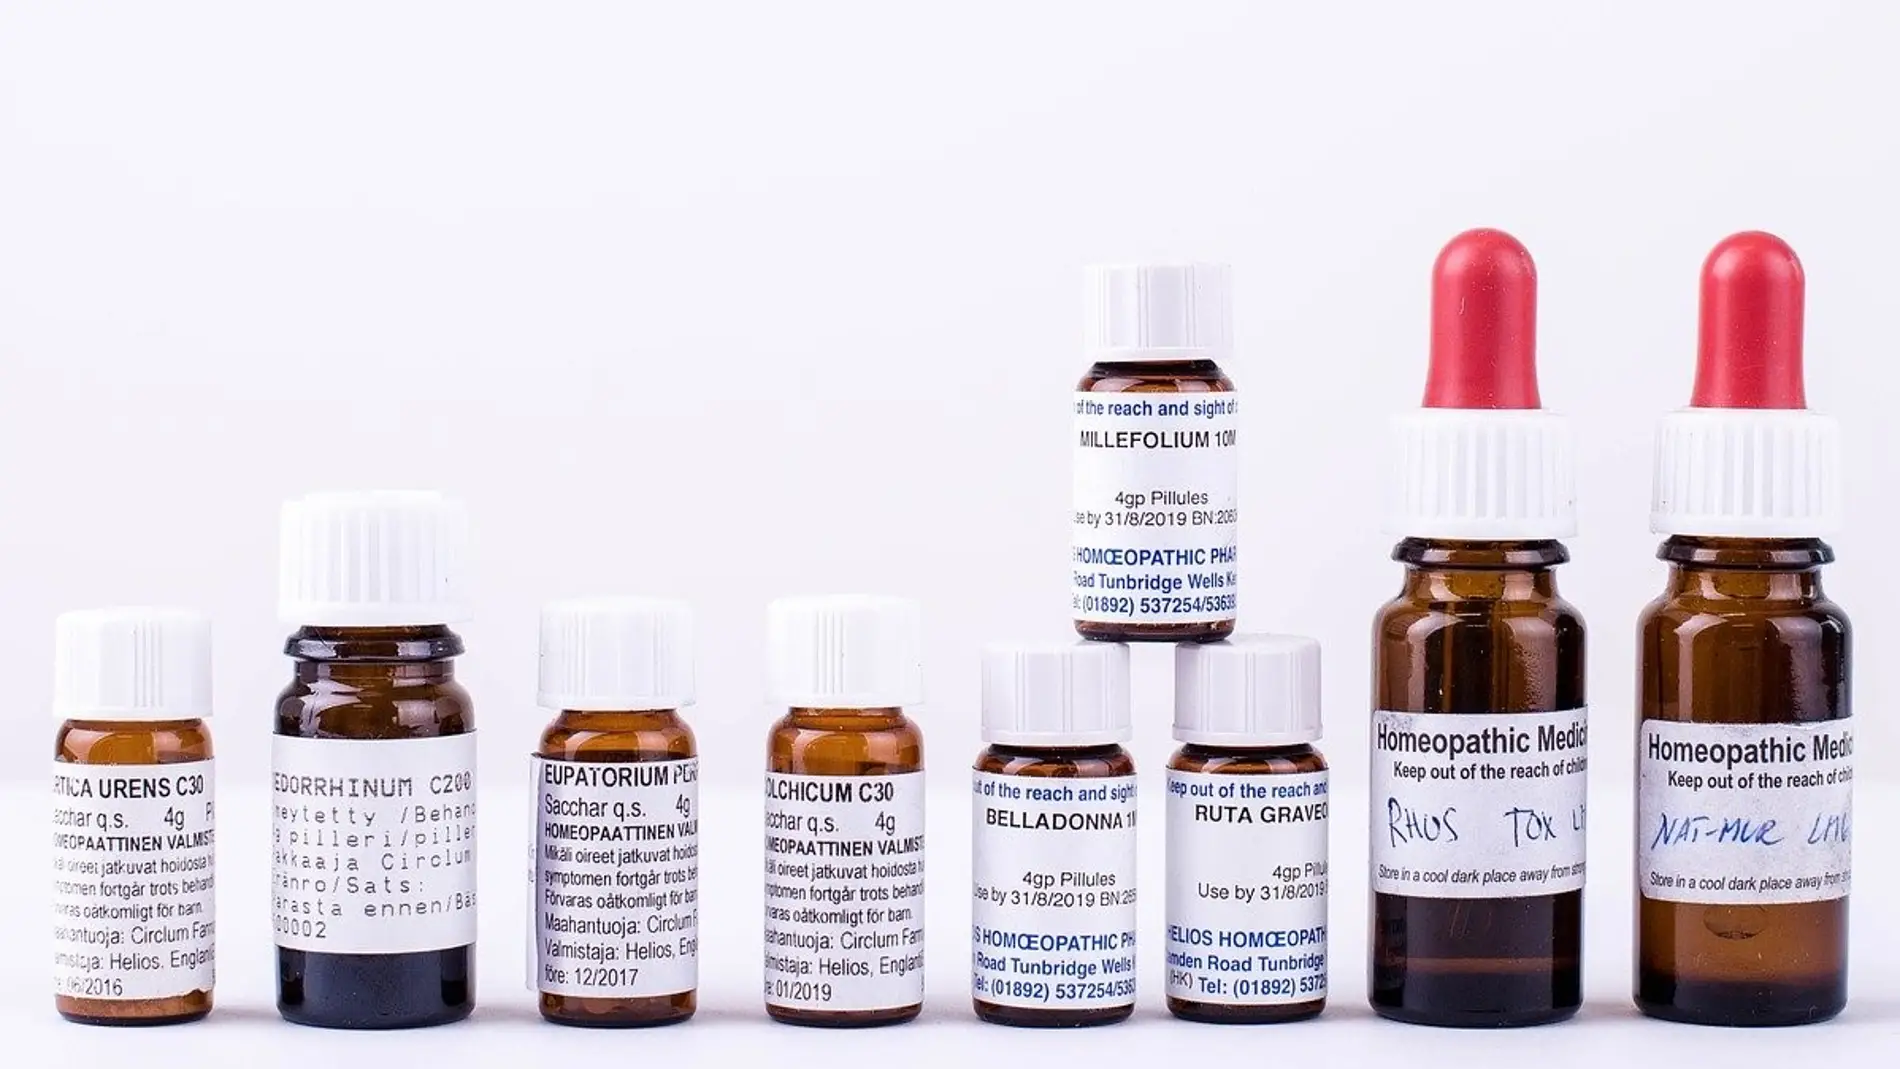 La homeopatia se apoya en una falsa apariencia cientifica para convencer a sus usuarios